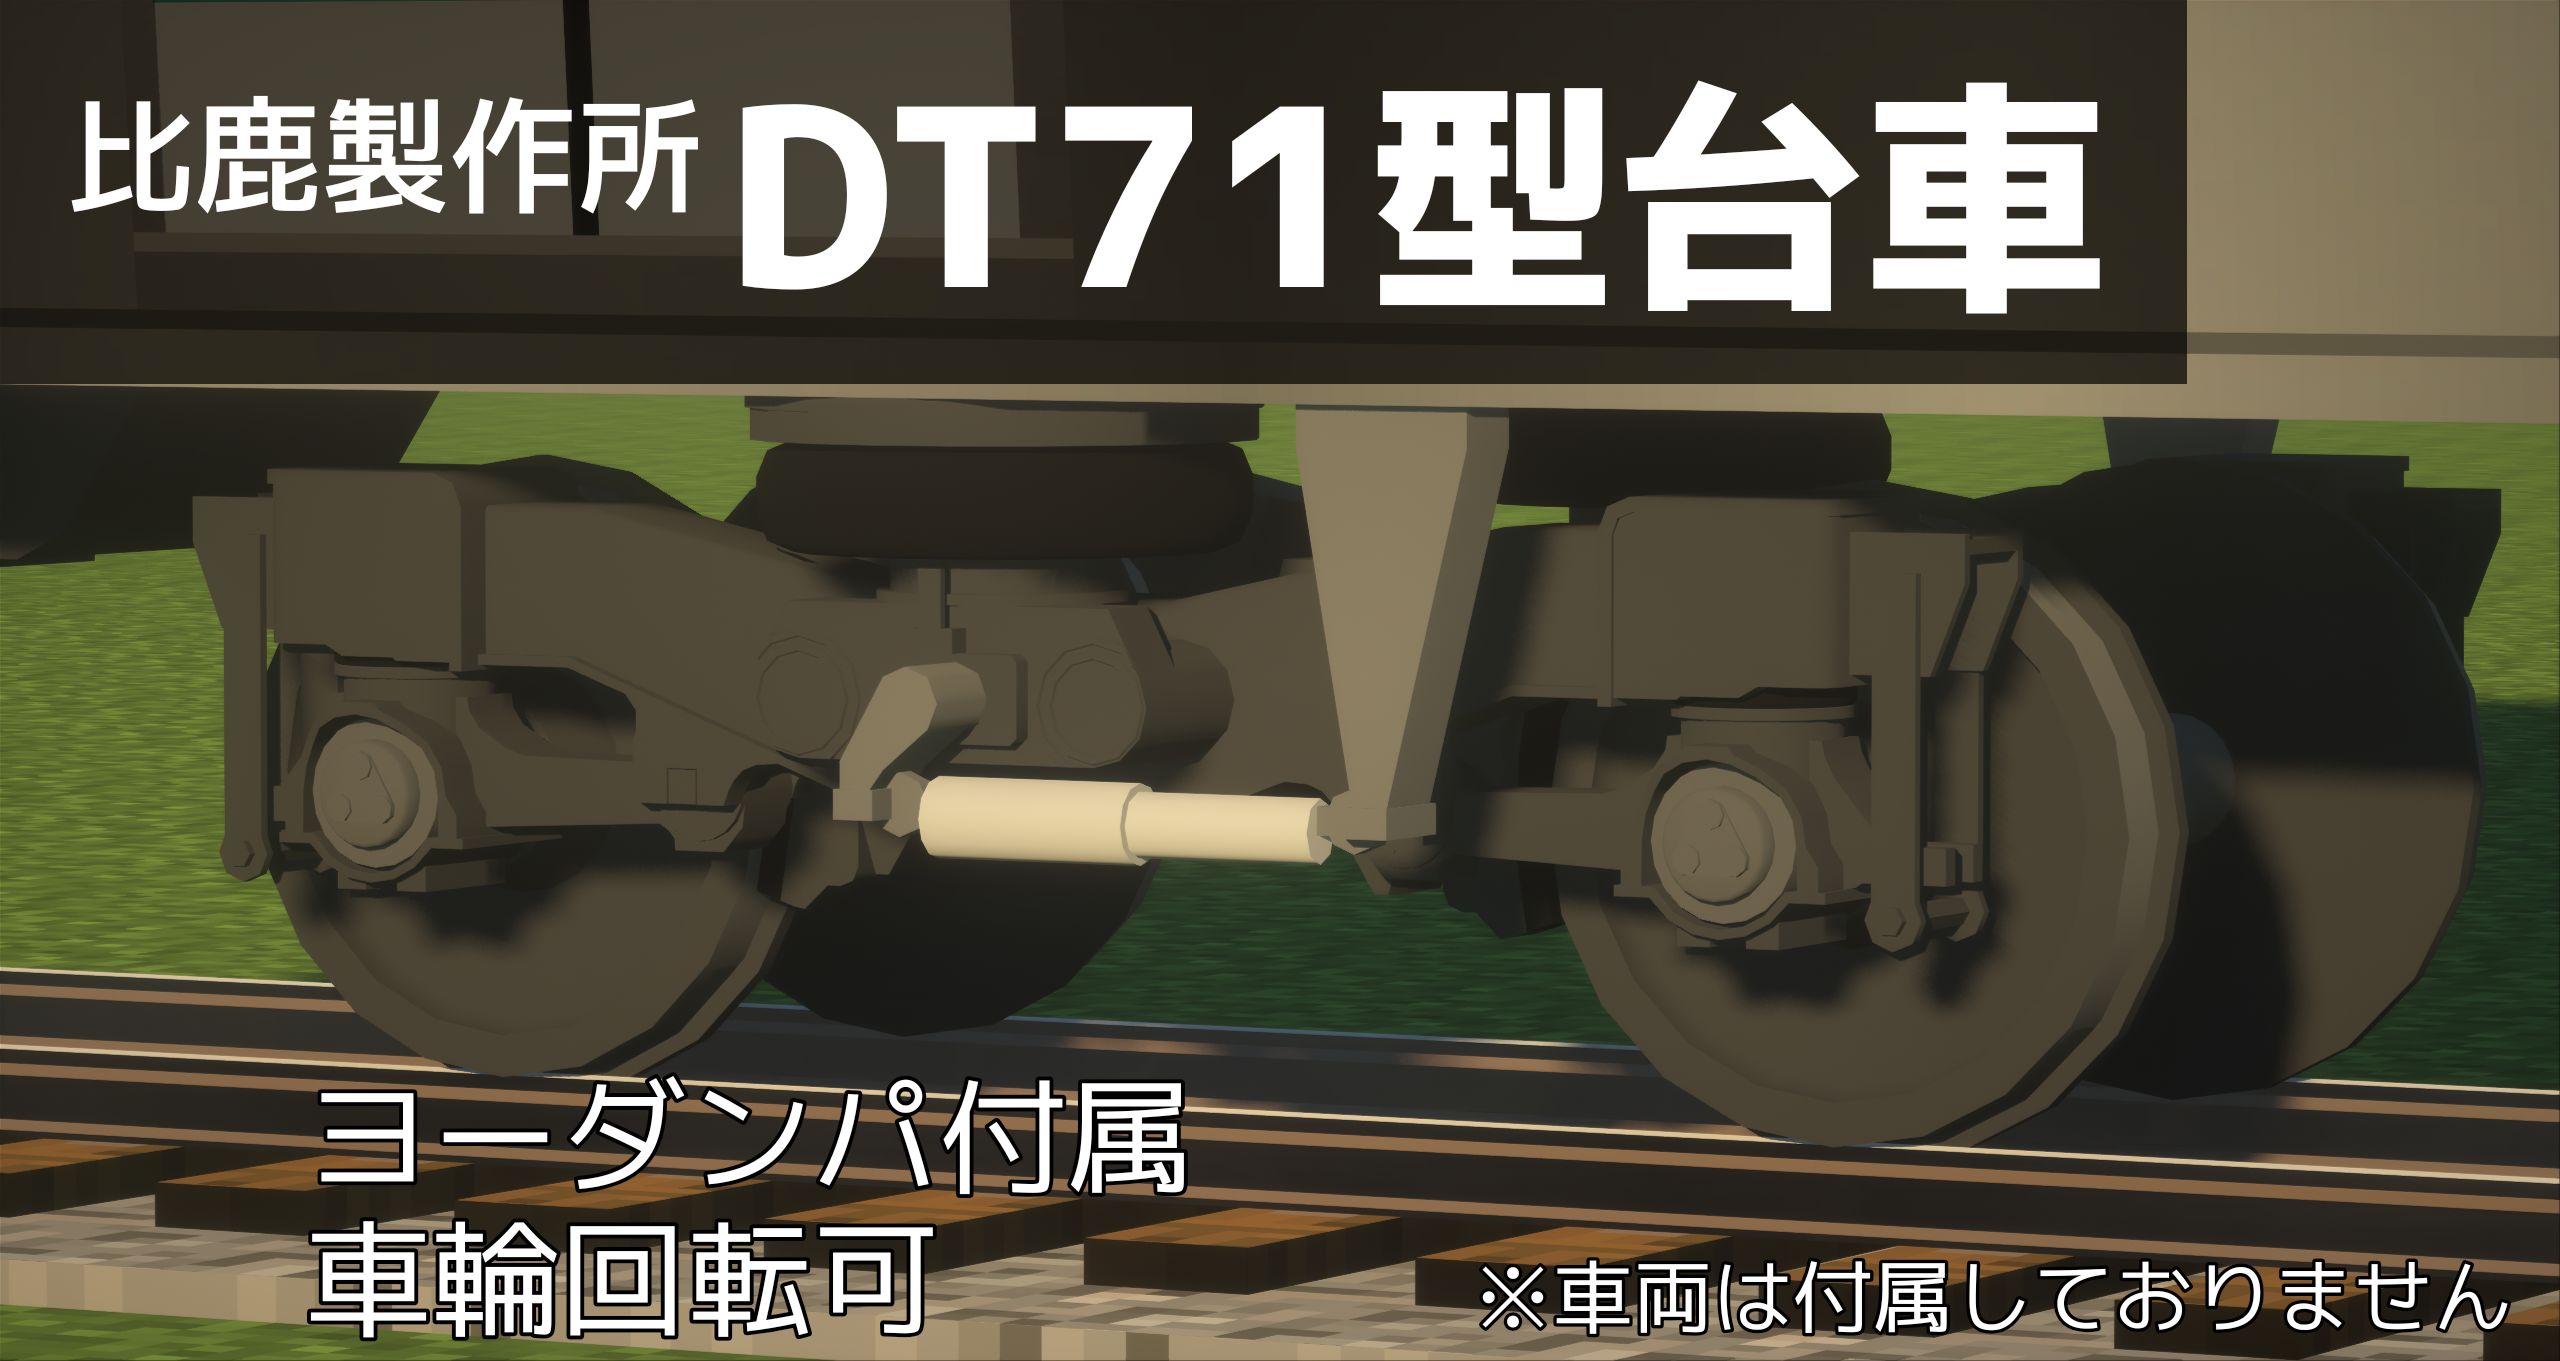 DT71